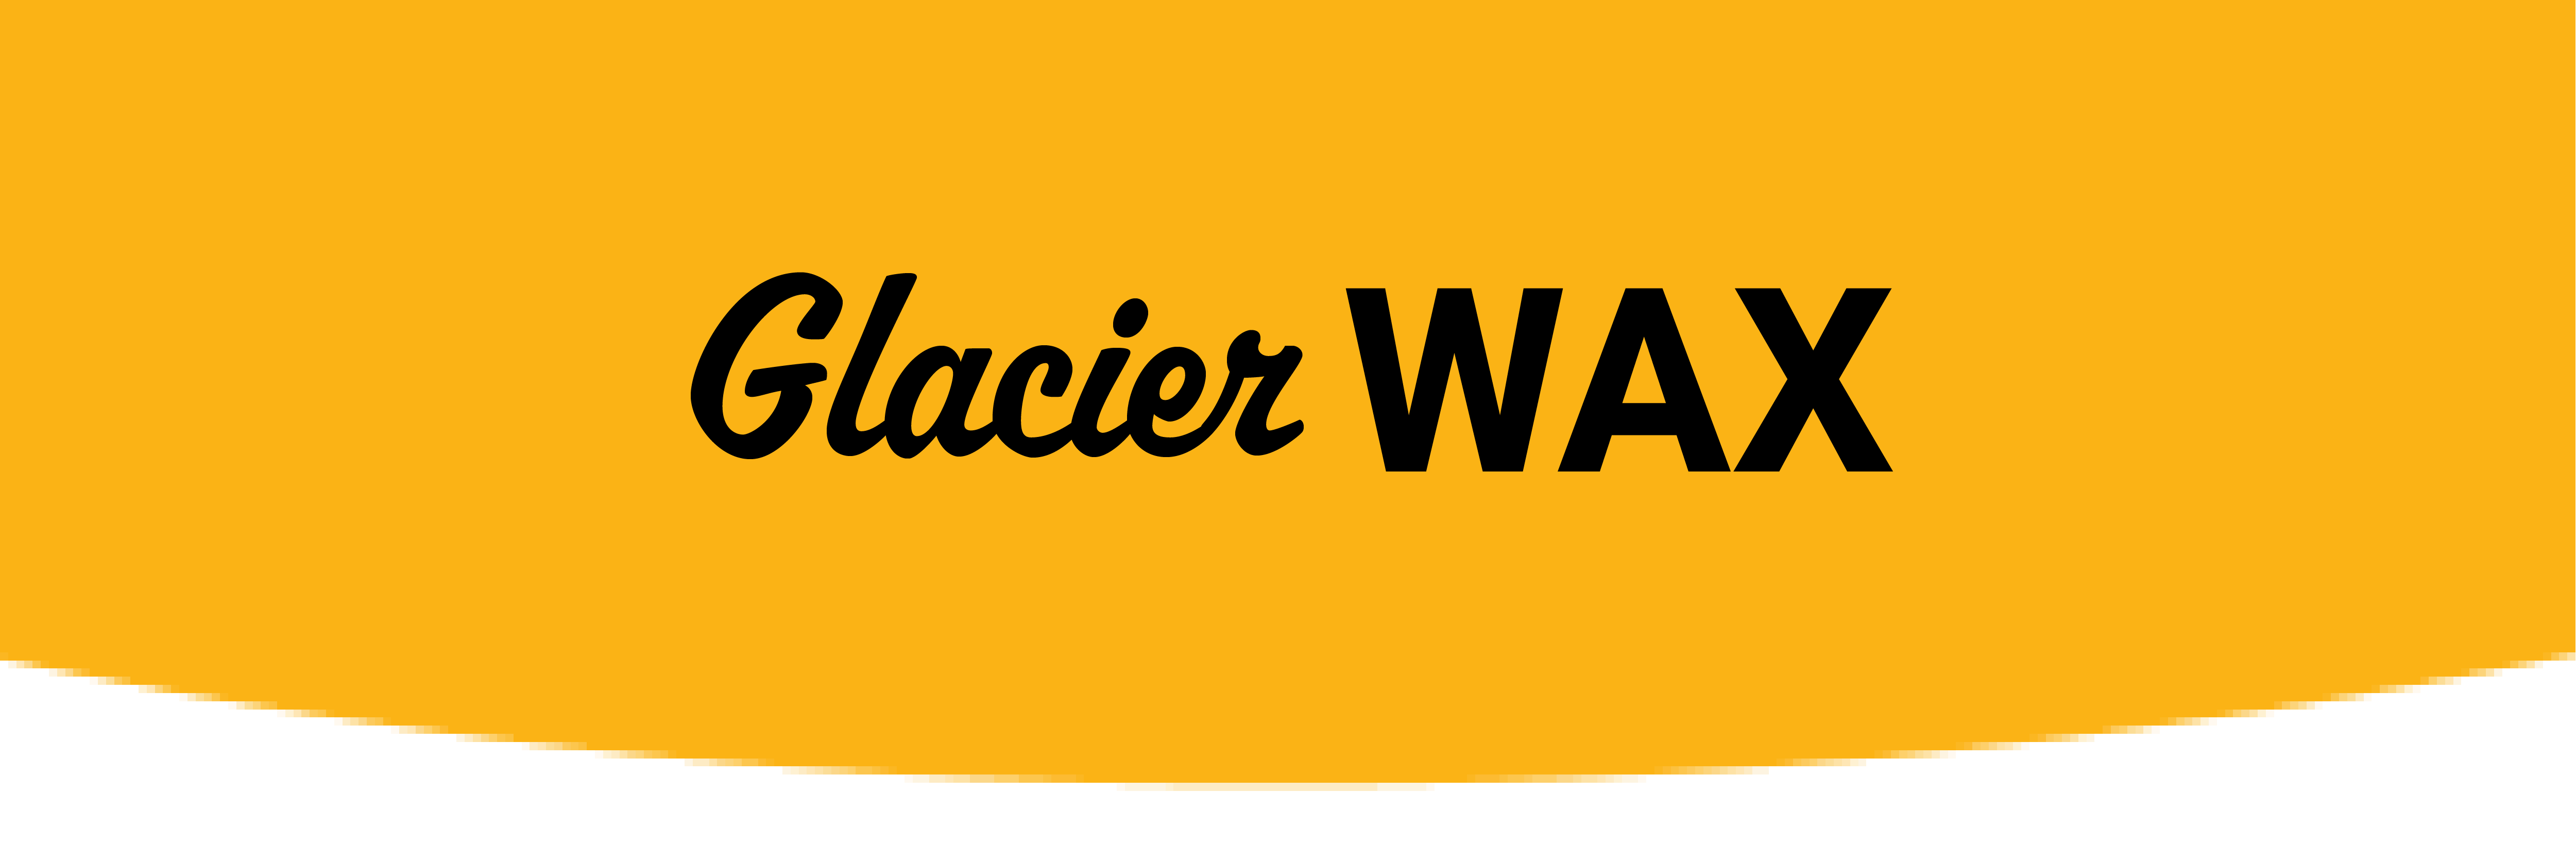 Glacier Wax